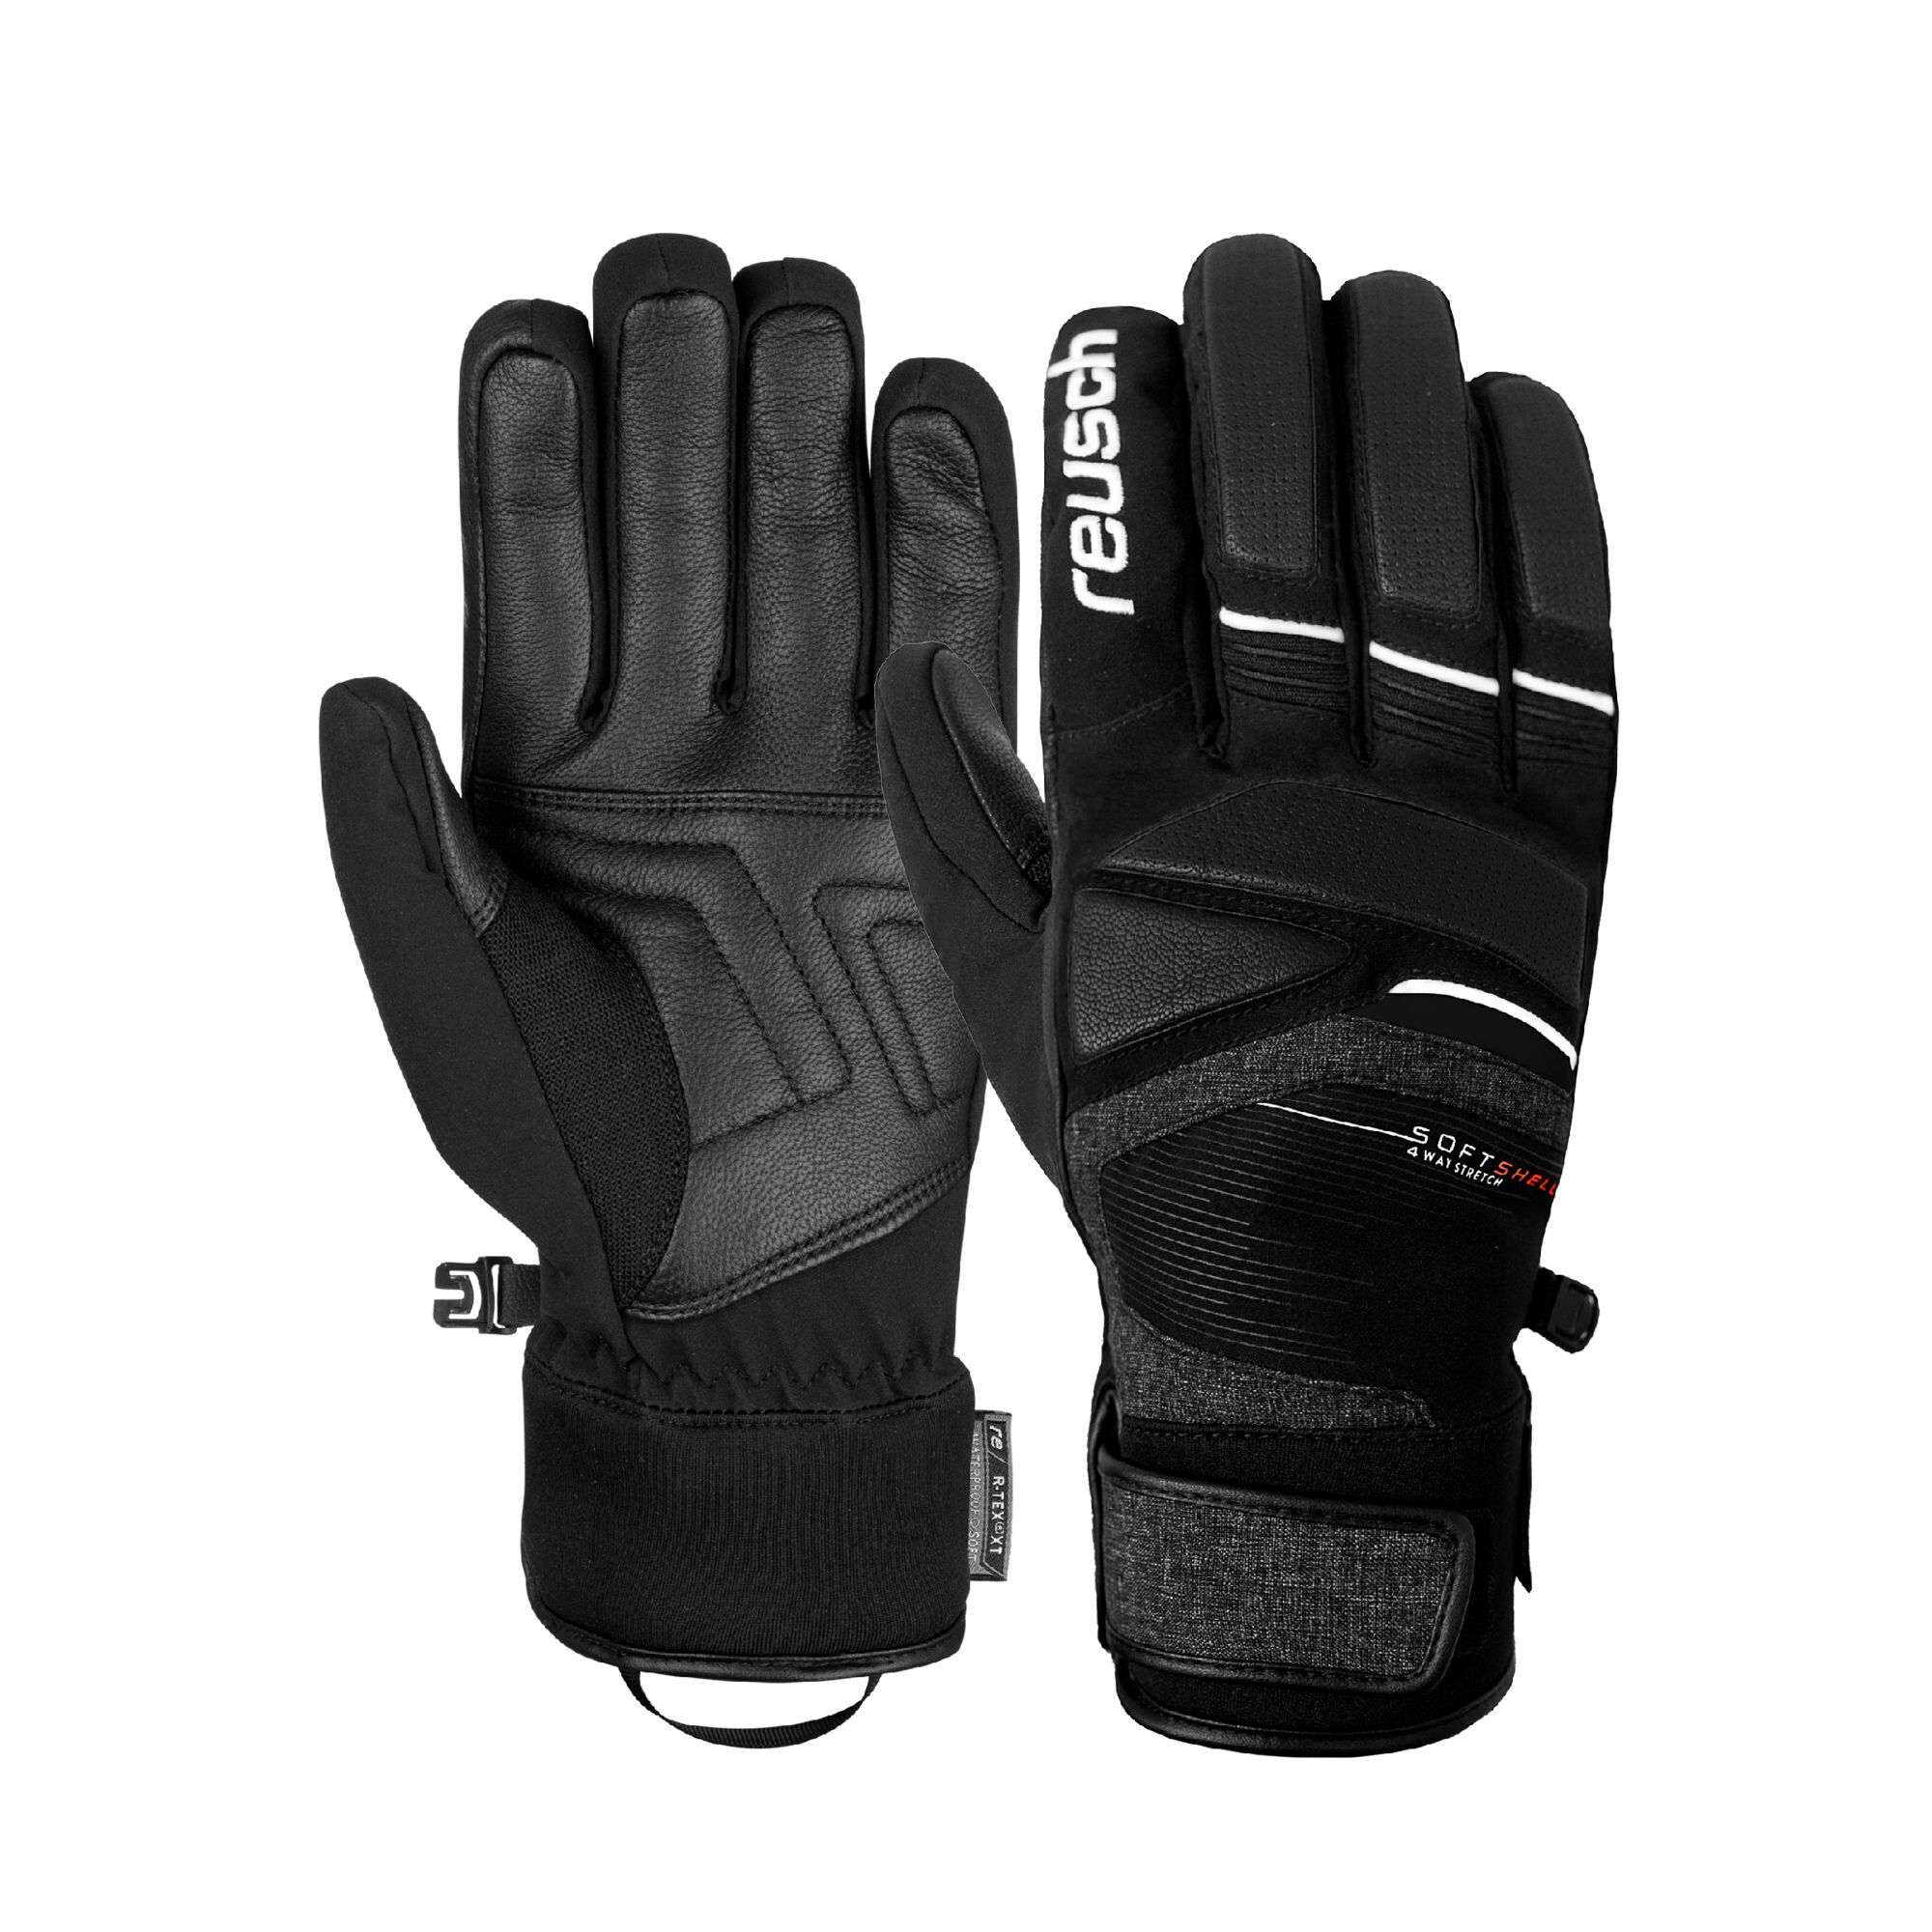 Reusch Storm R-TEX XT - Ski gloves - Men's